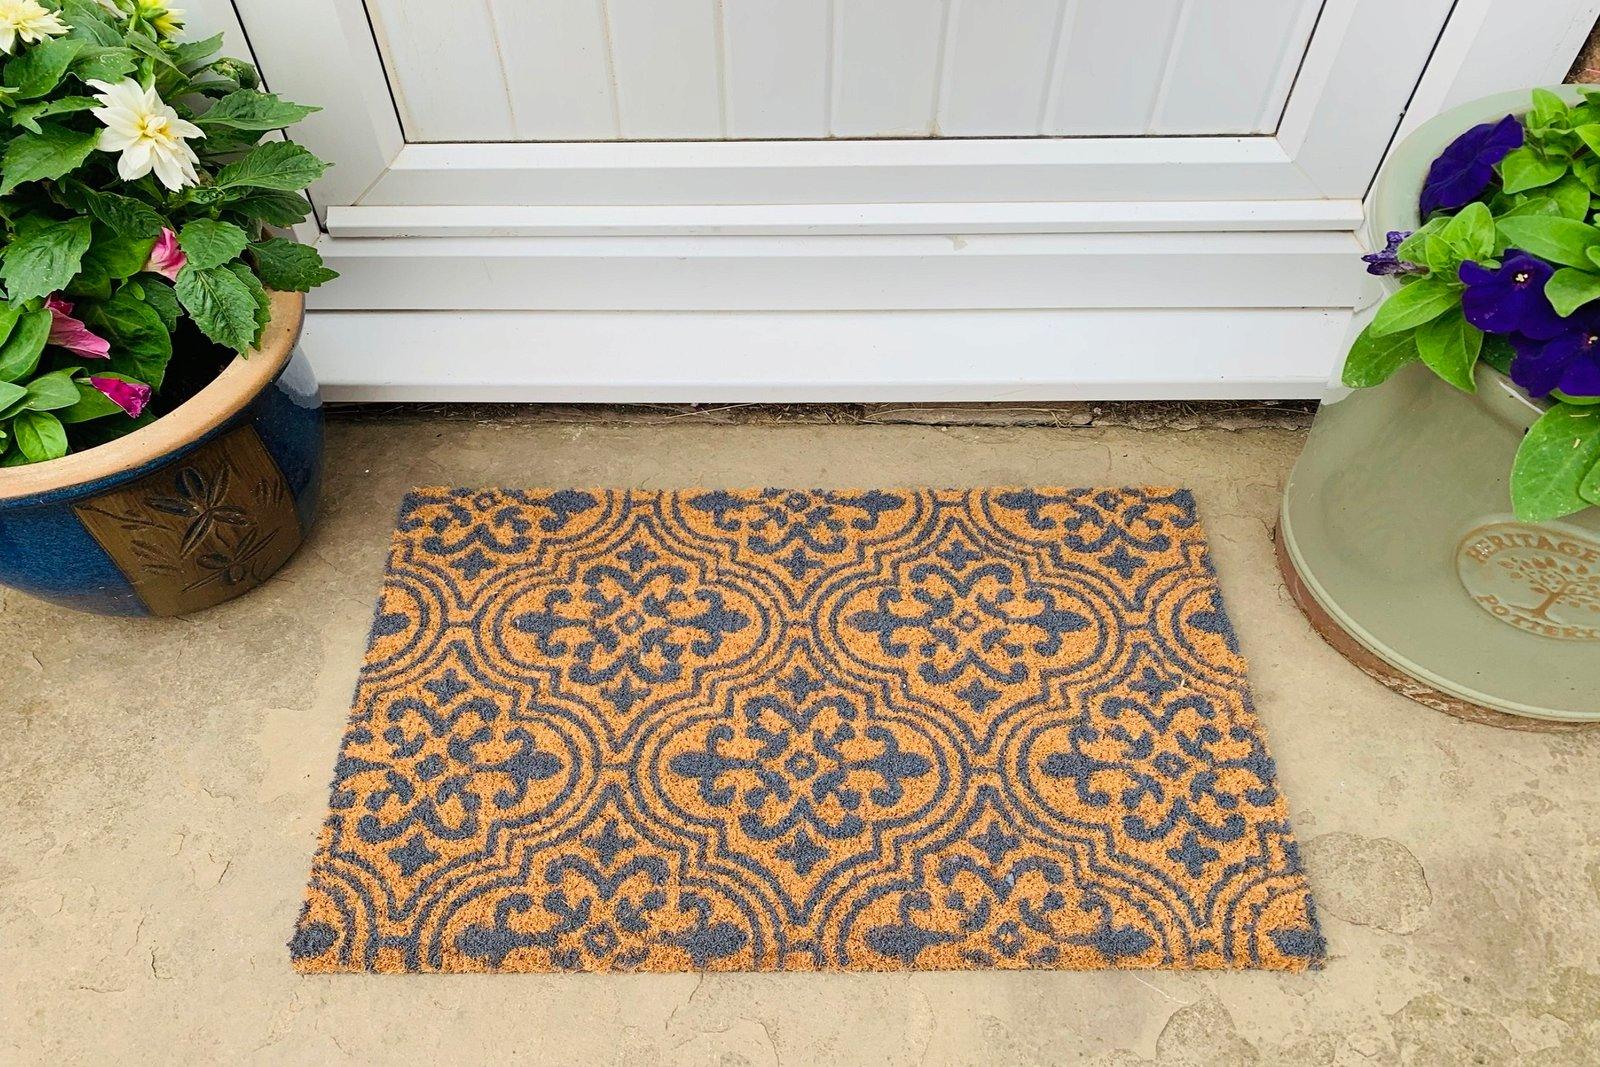 Coir Doormat Serenity Tile Design 40x60cm-Doormats